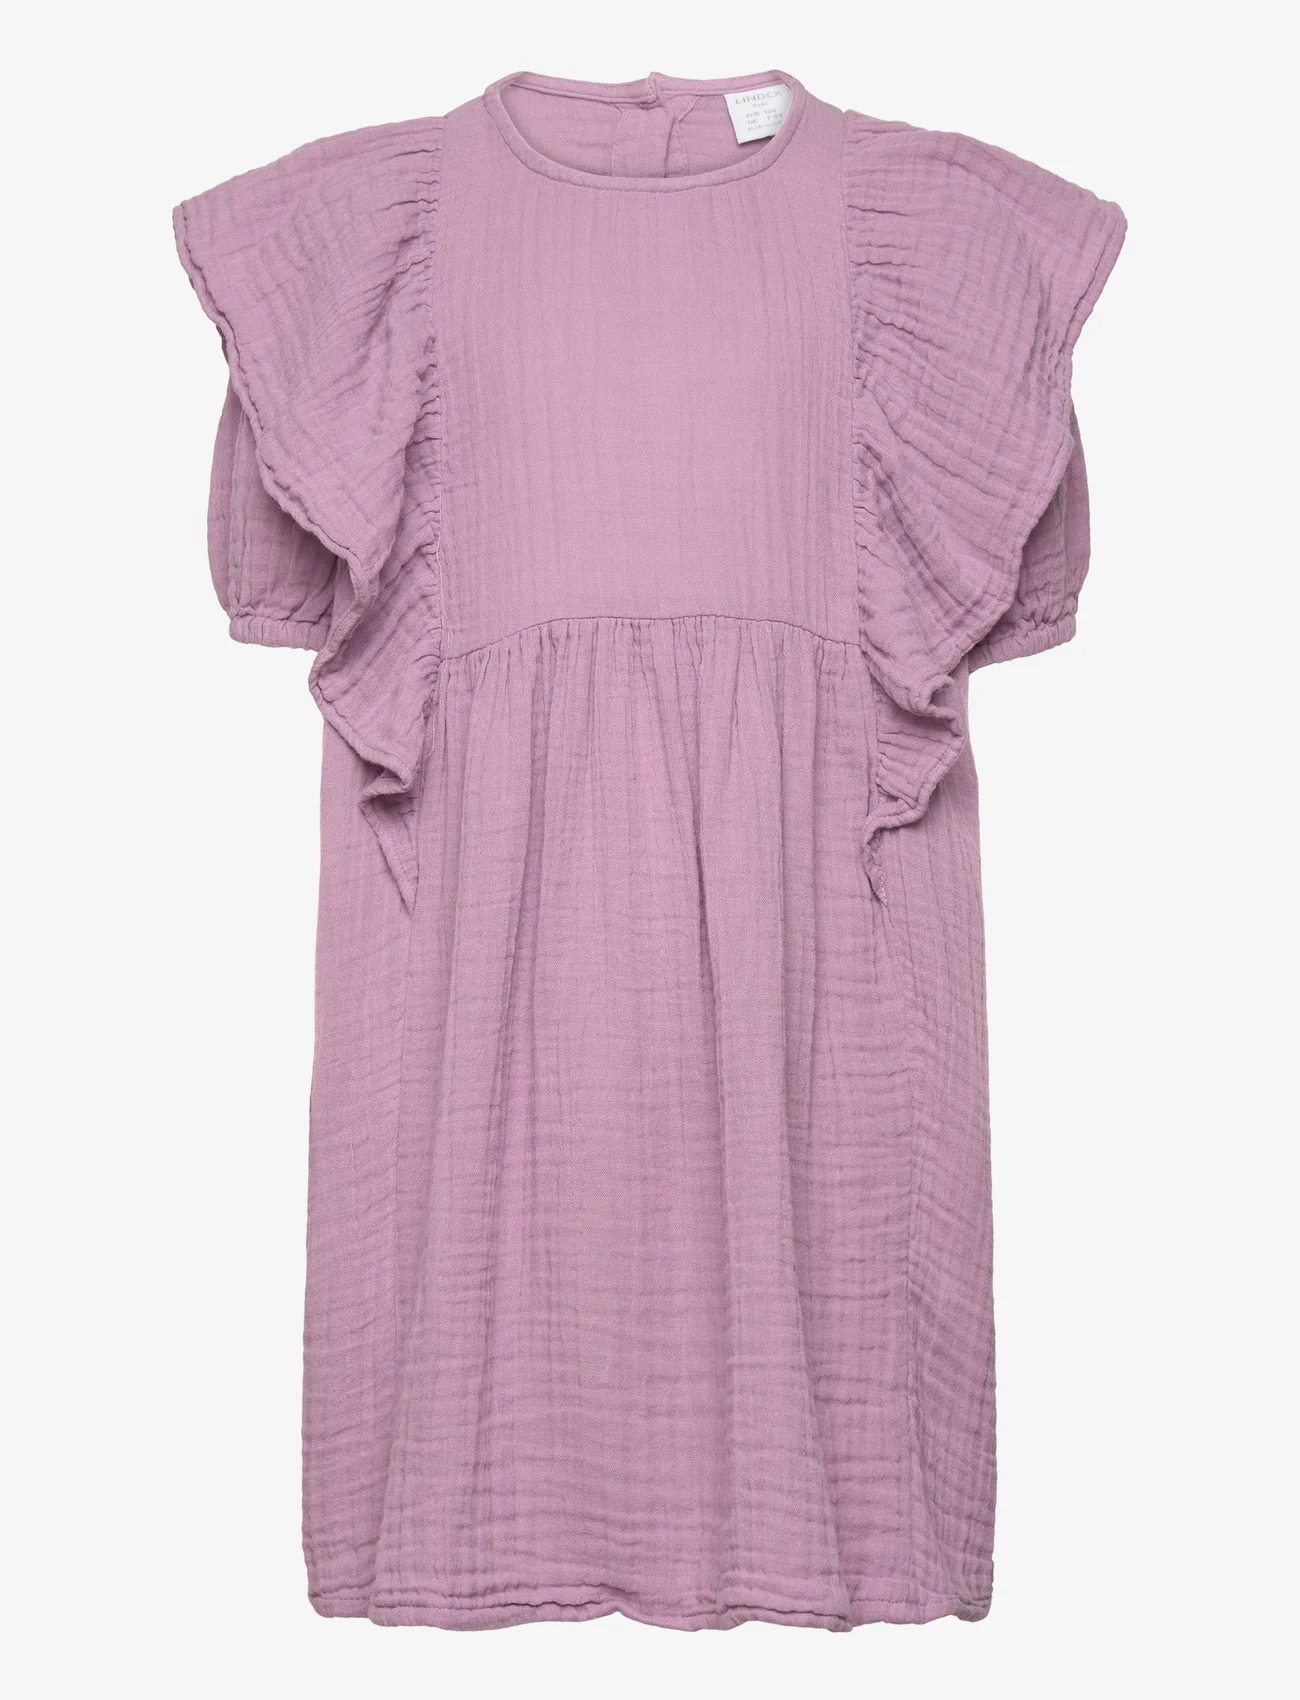 Lindex - Dress loose big frill doublewe - casual jurken met korte mouwen - light dusty lilac - 0